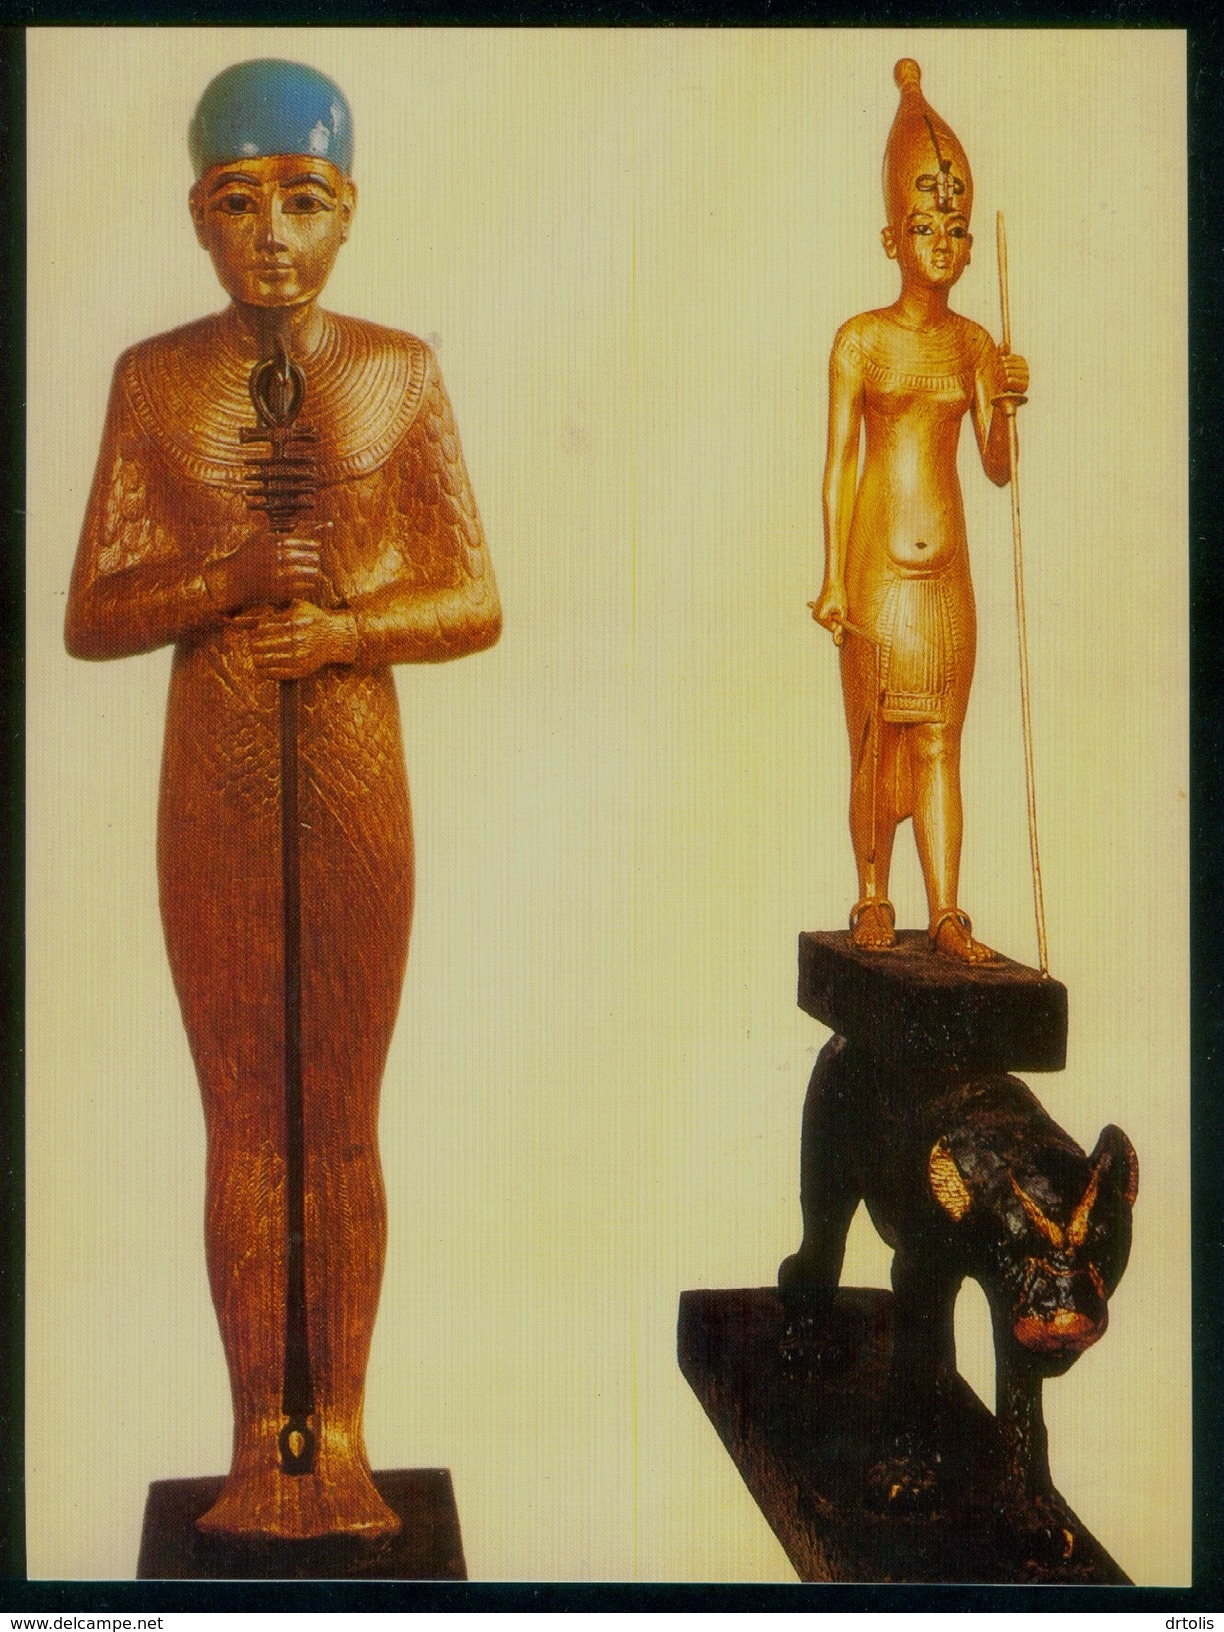 EGYPT / EGYPTOLOGY / EGYPTIAN MUSEUM / TUTANKHAMUN'S TREASURES / PTAH / THE KING OF UPPER EGYPT - Museums